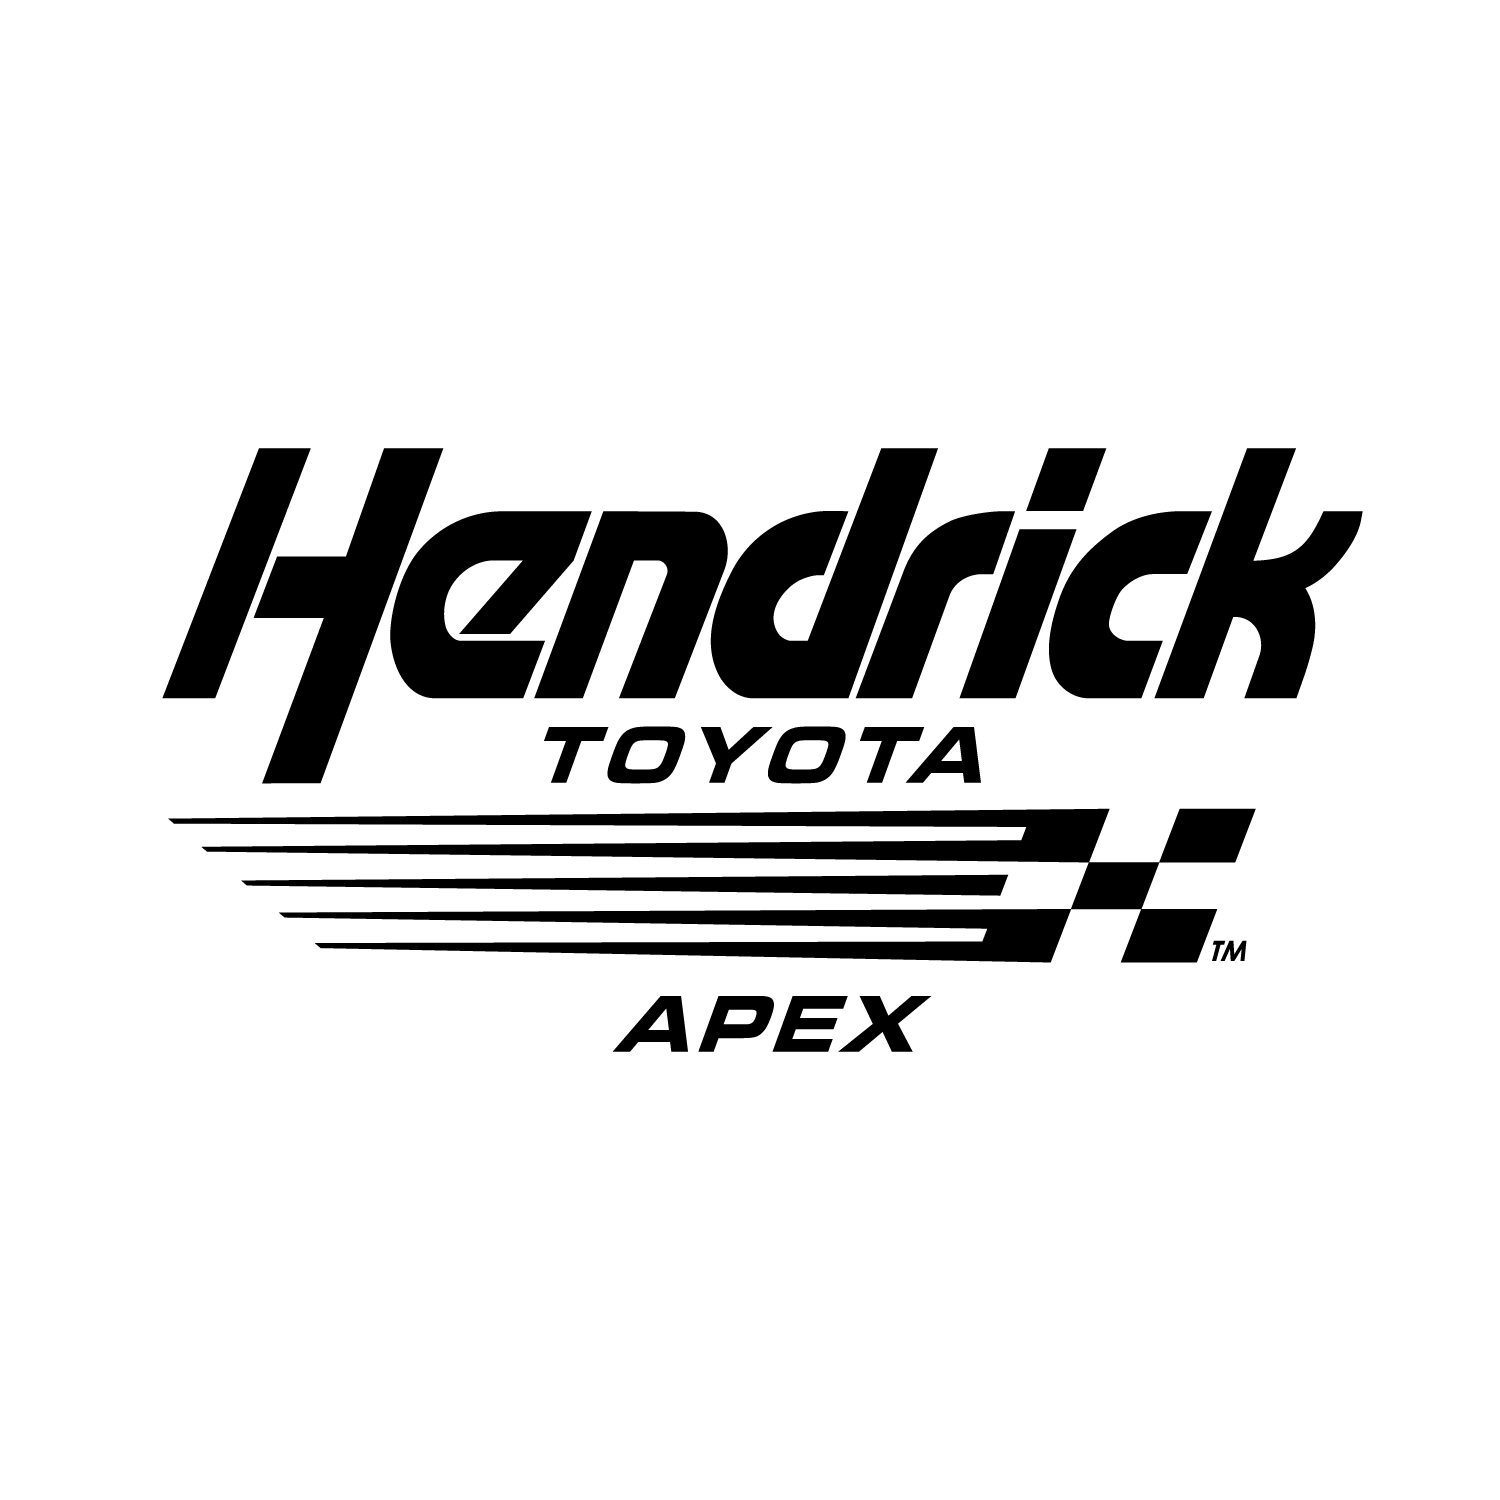 Hendrick Toyota Apex